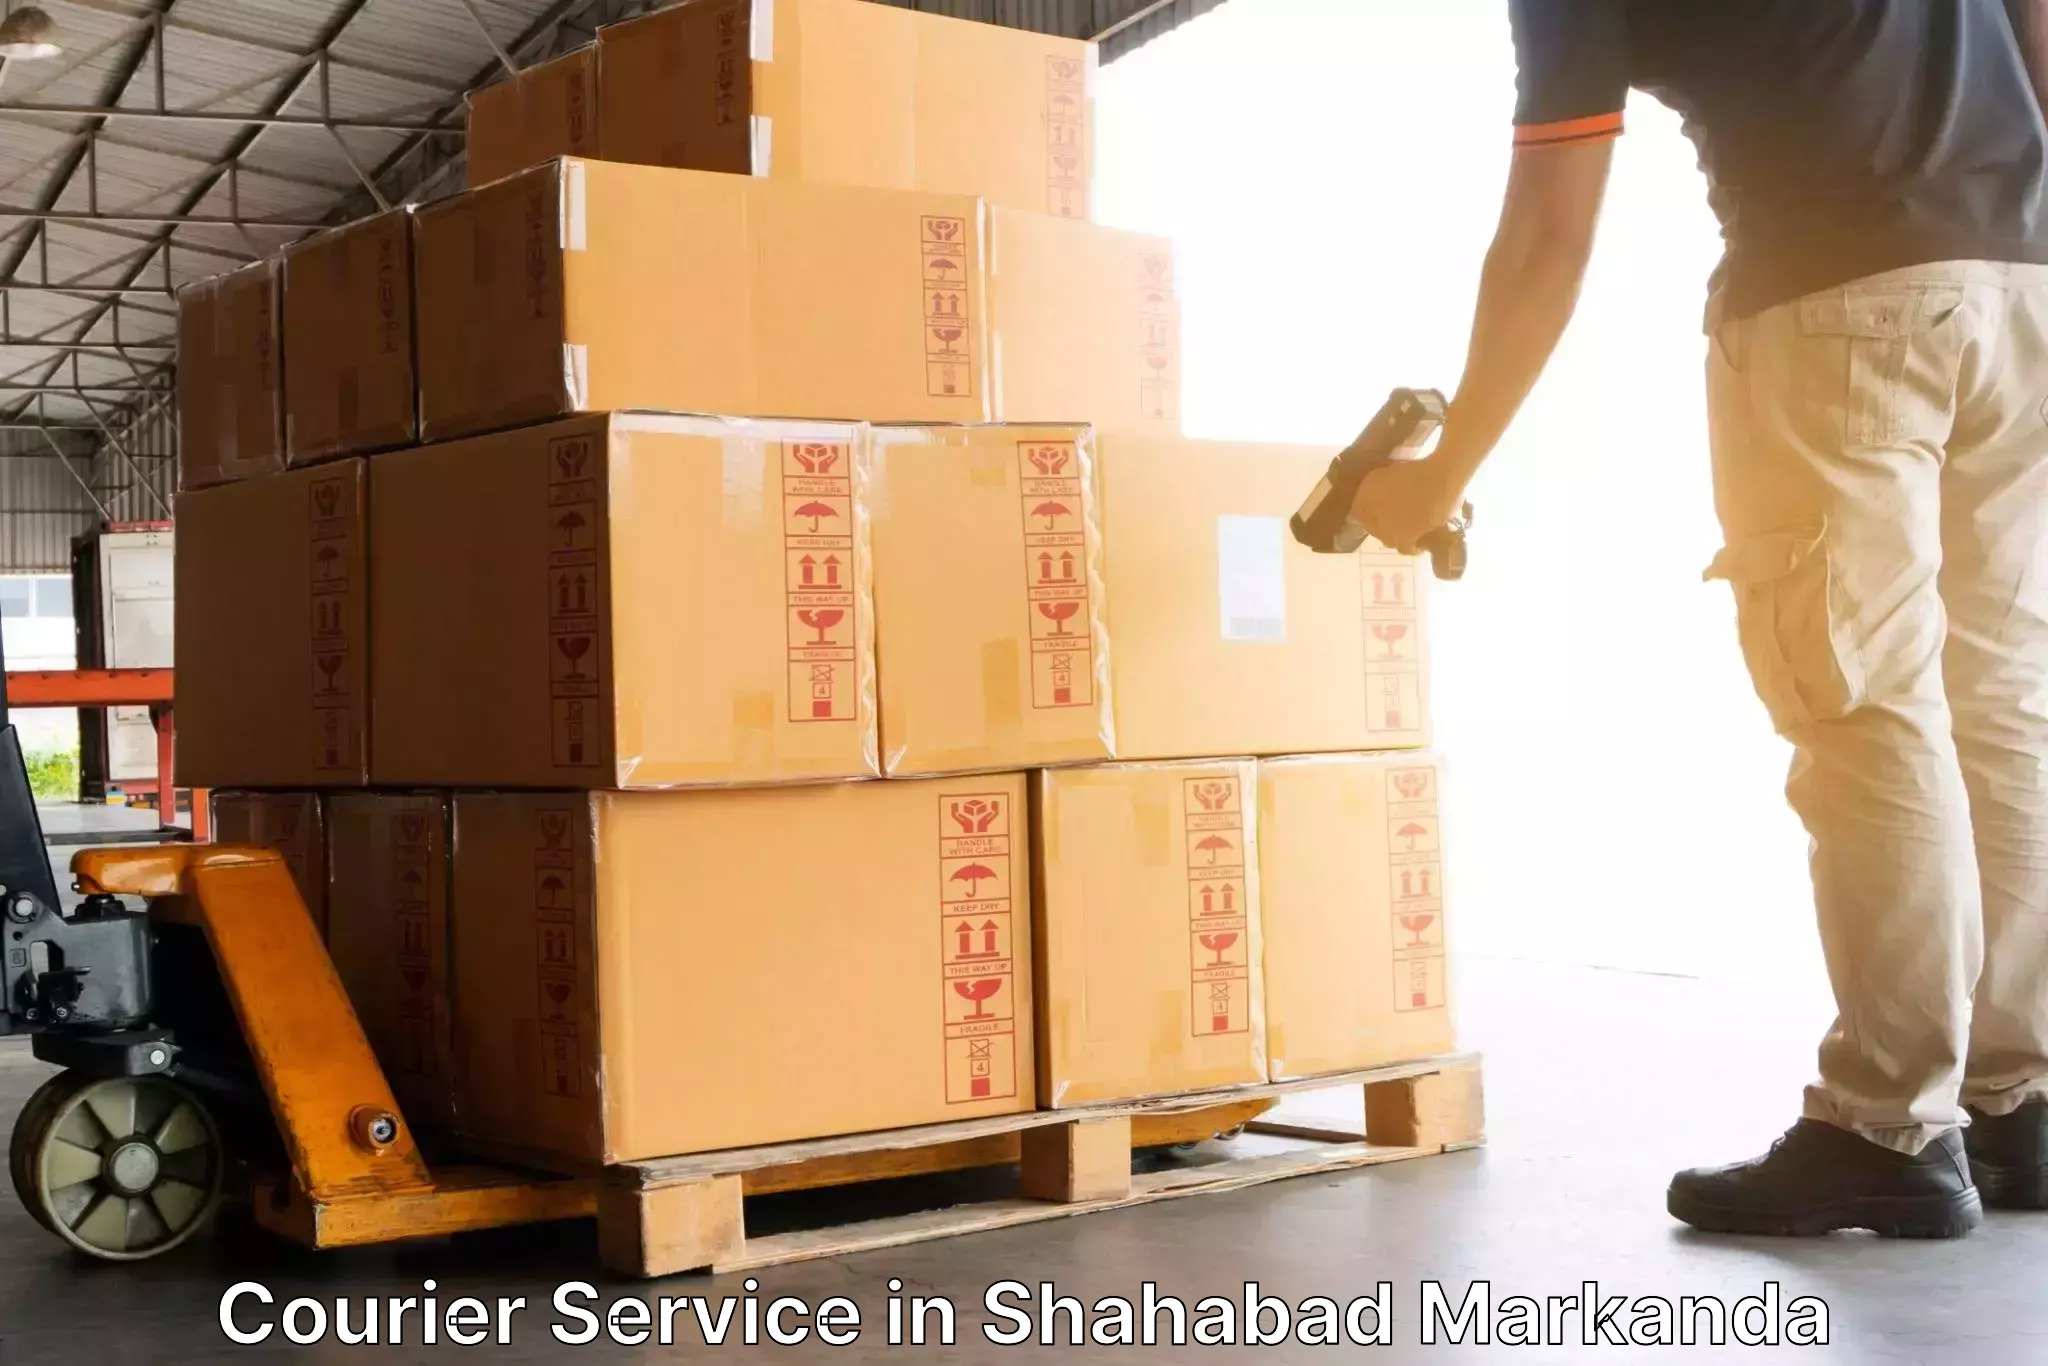 Courier service comparison in Shahabad Markanda